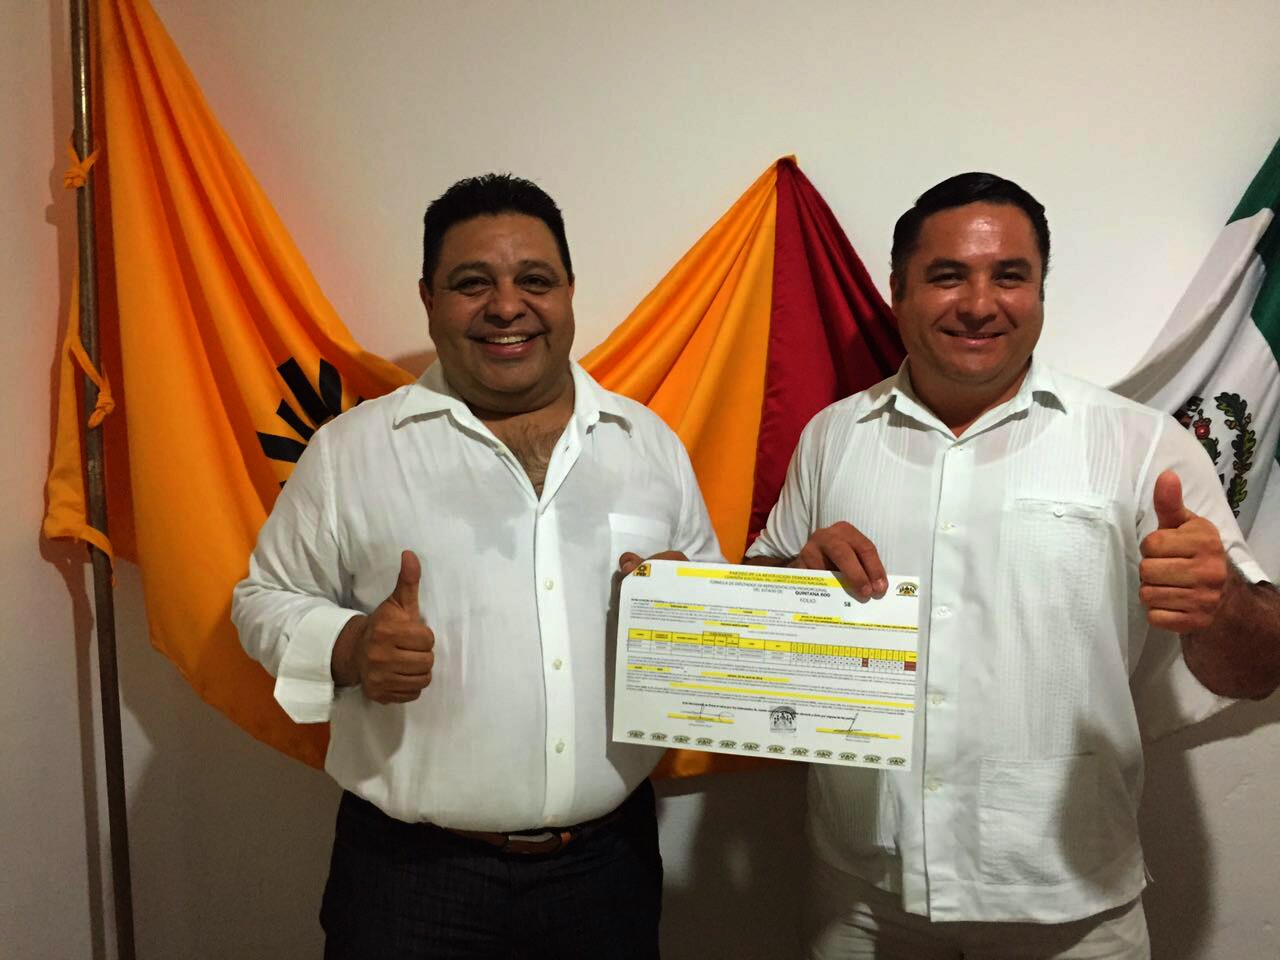 Orlando Muñoz junto con el activista social Ismael Sauceda se registraron como propietario y suplente por la diputación local del Distrito XI de Tulum y Solidaridad.